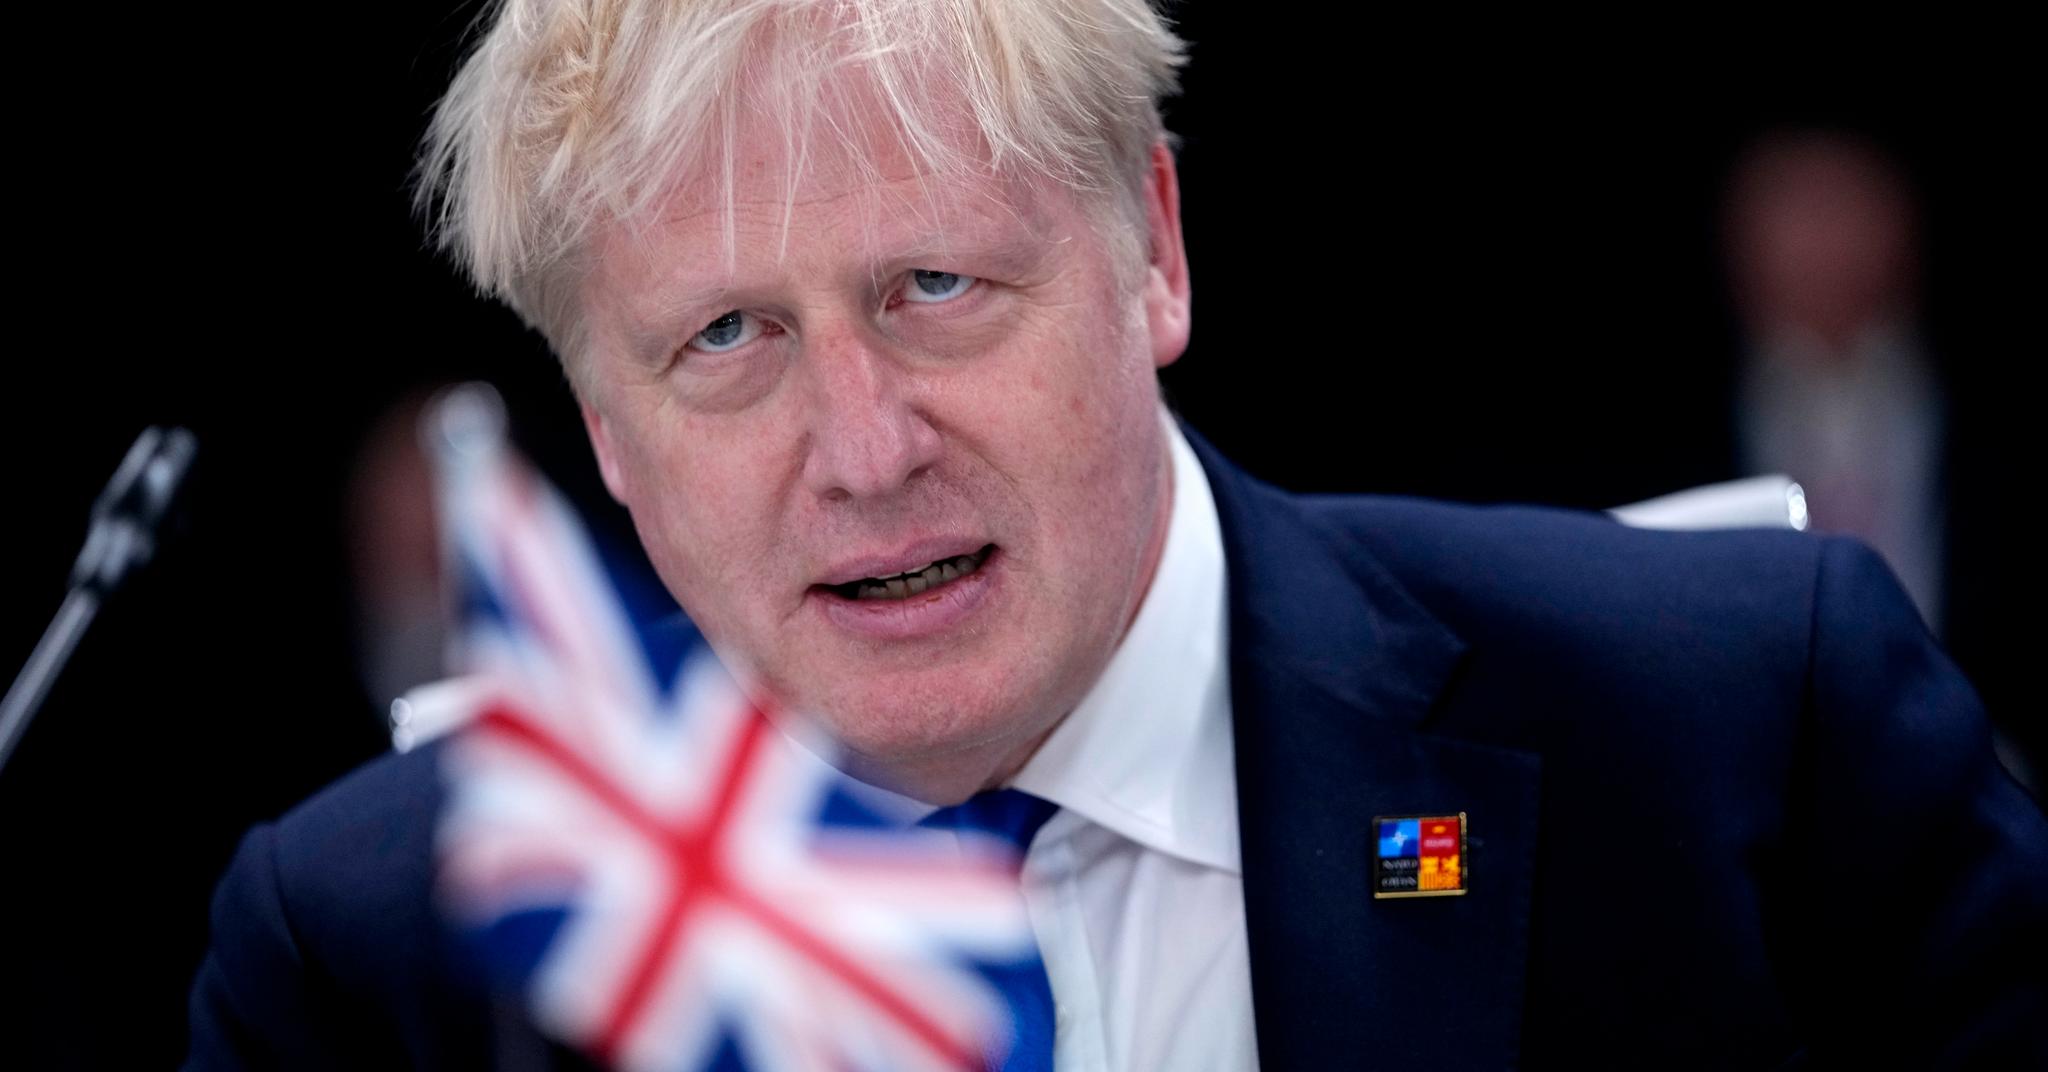 Un nouveau scandale sexuel dans le cercle restreint de Boris Johnson le frappe durement